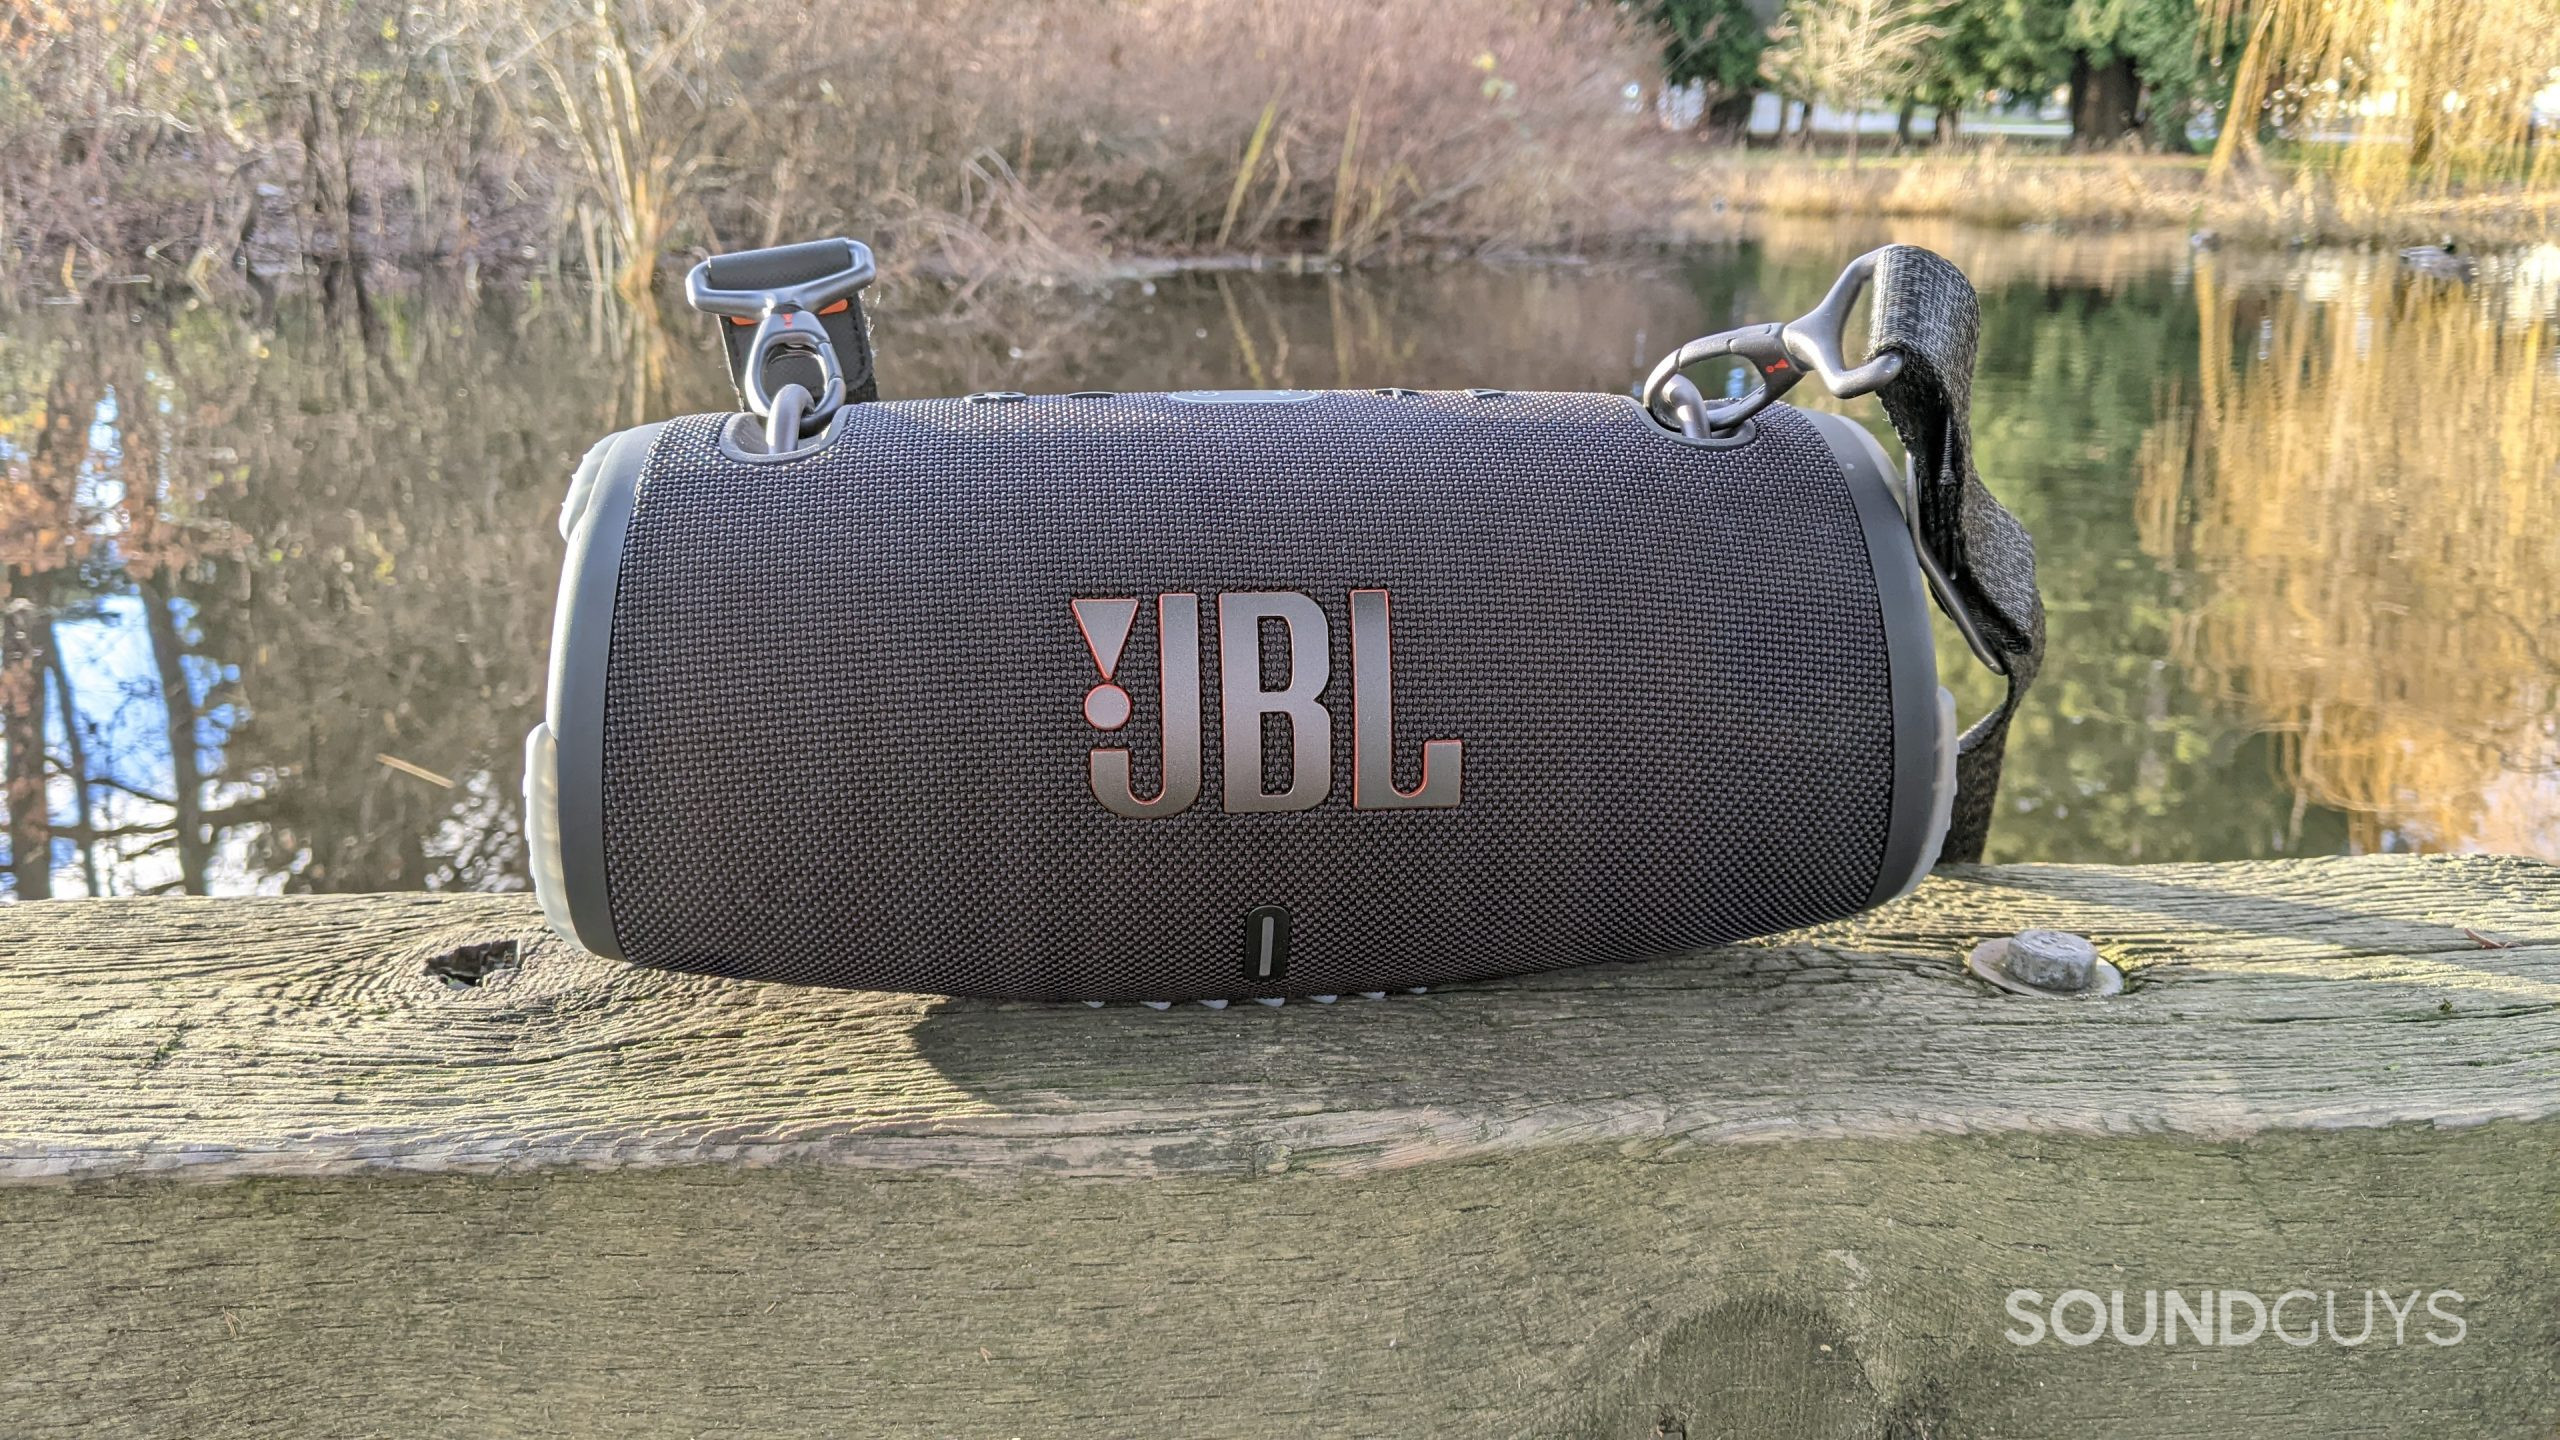 Altavoz Bluetooth JBL Xtreme 3 sentado junto a un estanque en un día soleado.